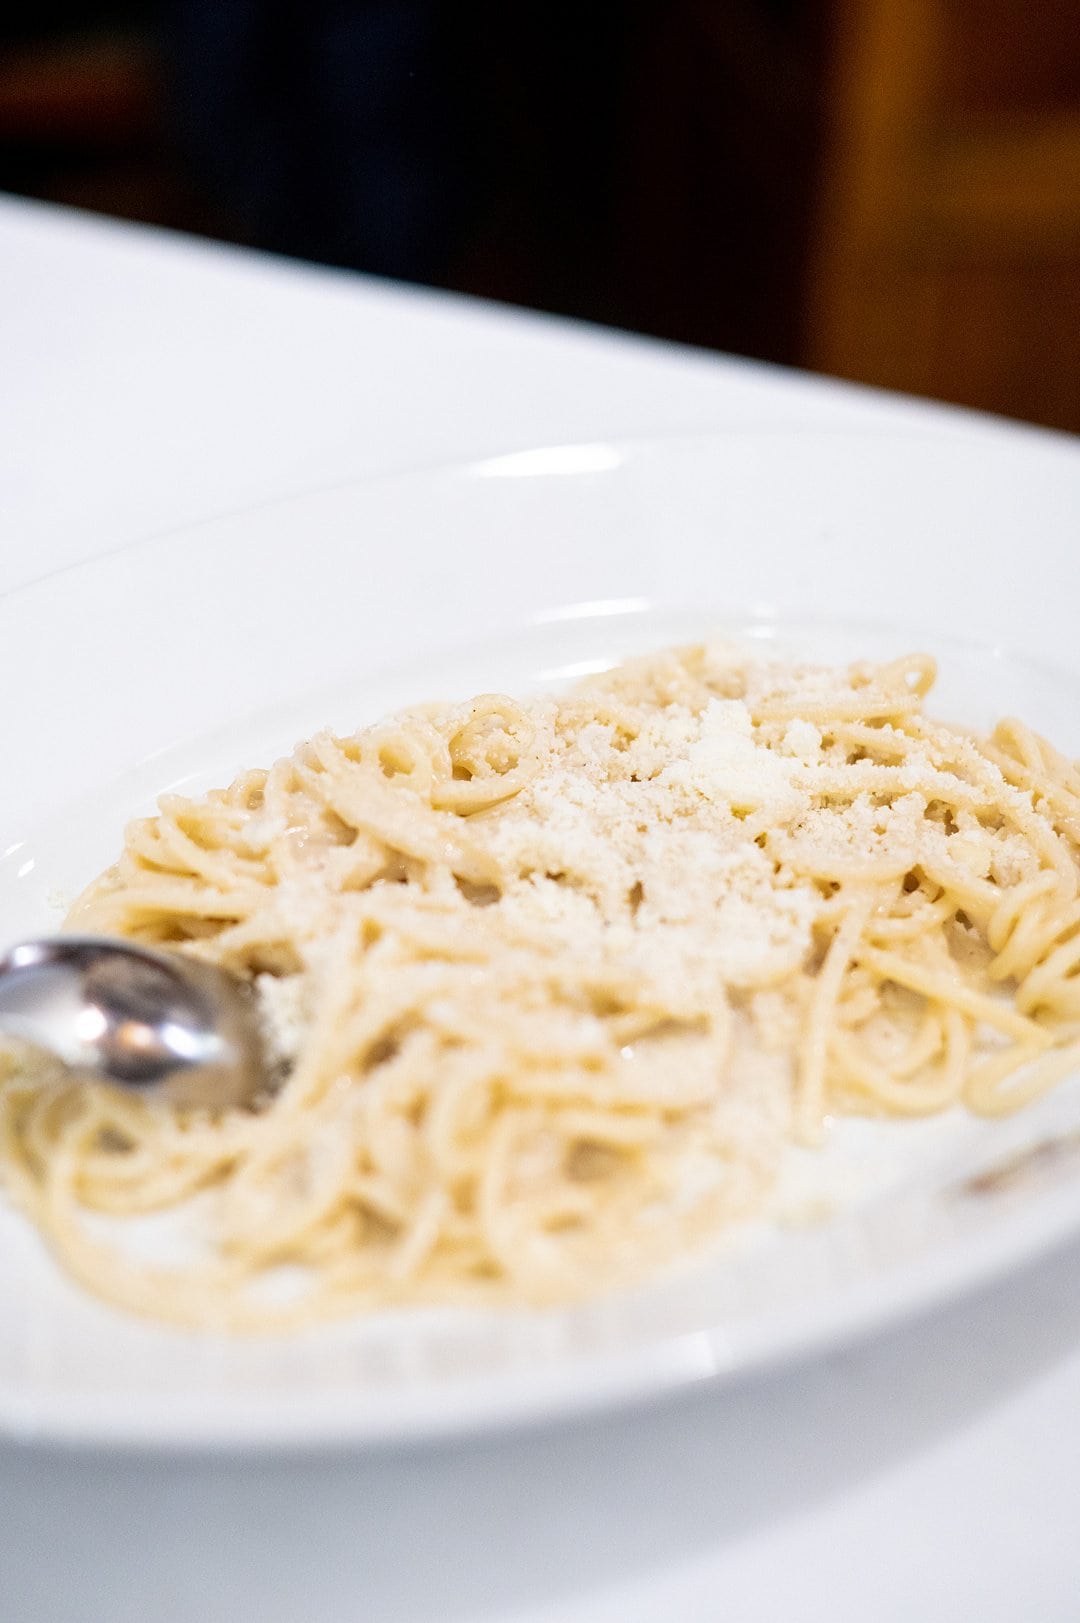 Plate of spaghetti served cacio e pepe style.